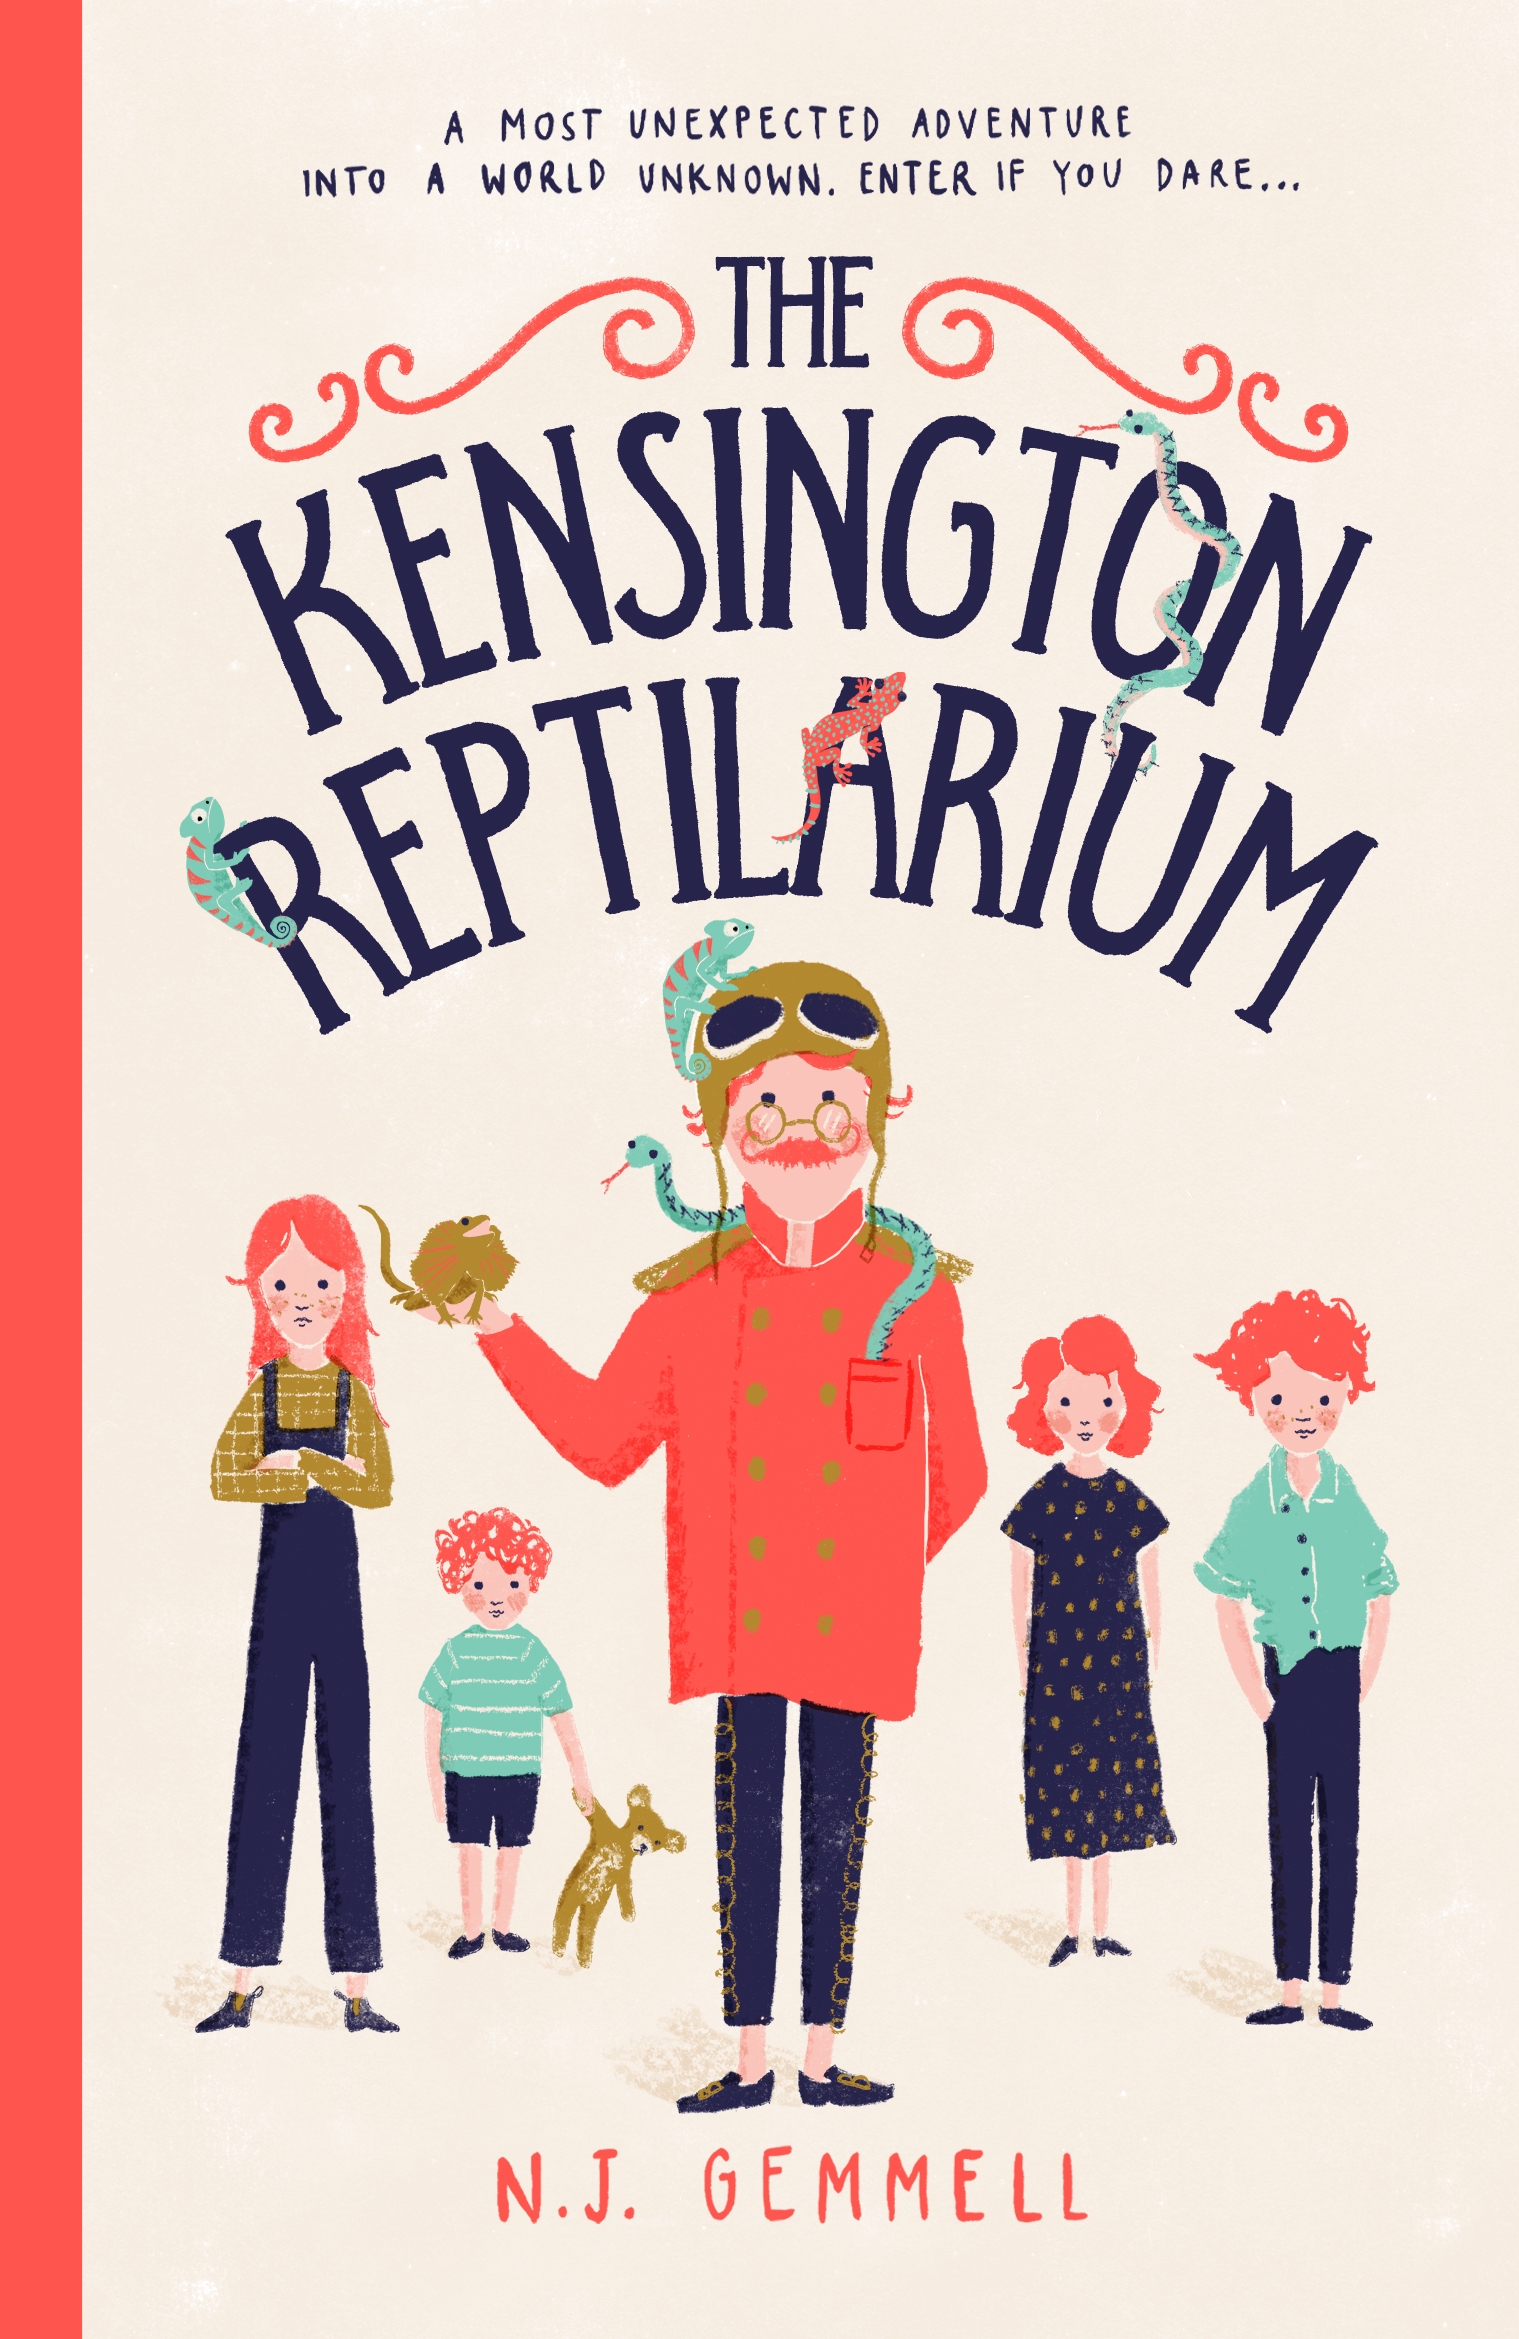 The Kensington Reptilarium